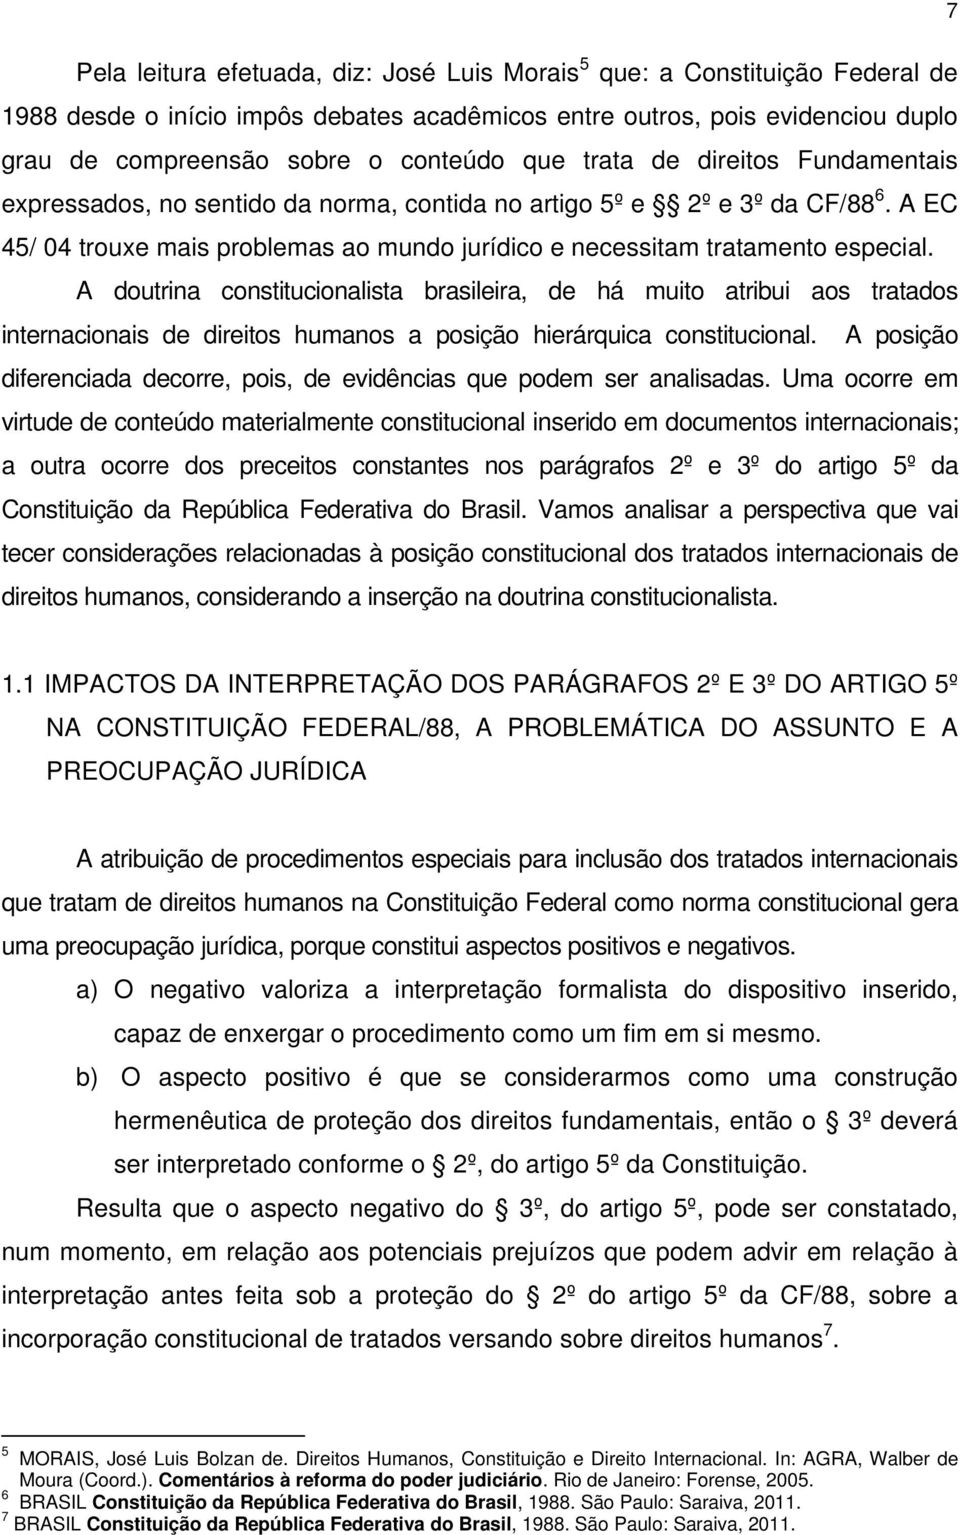 A doutrina constitucionalista brasileira, de há muito atribui aos tratados internacionais de direitos humanos a posição hierárquica constitucional.